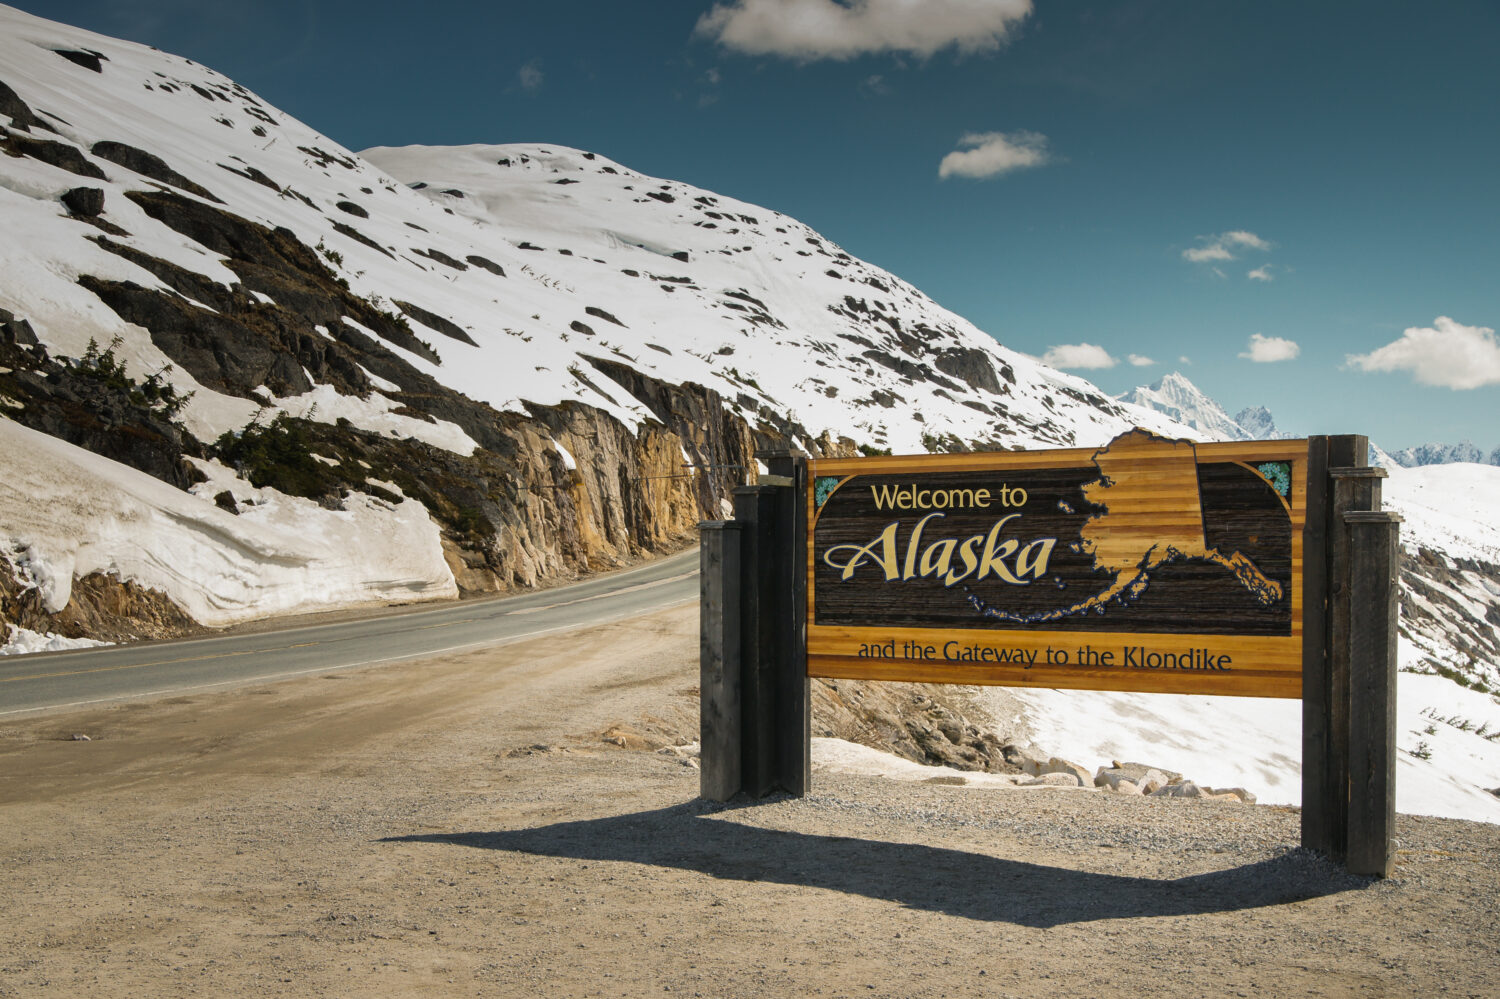 Benvenuti al segno dell'Alaska